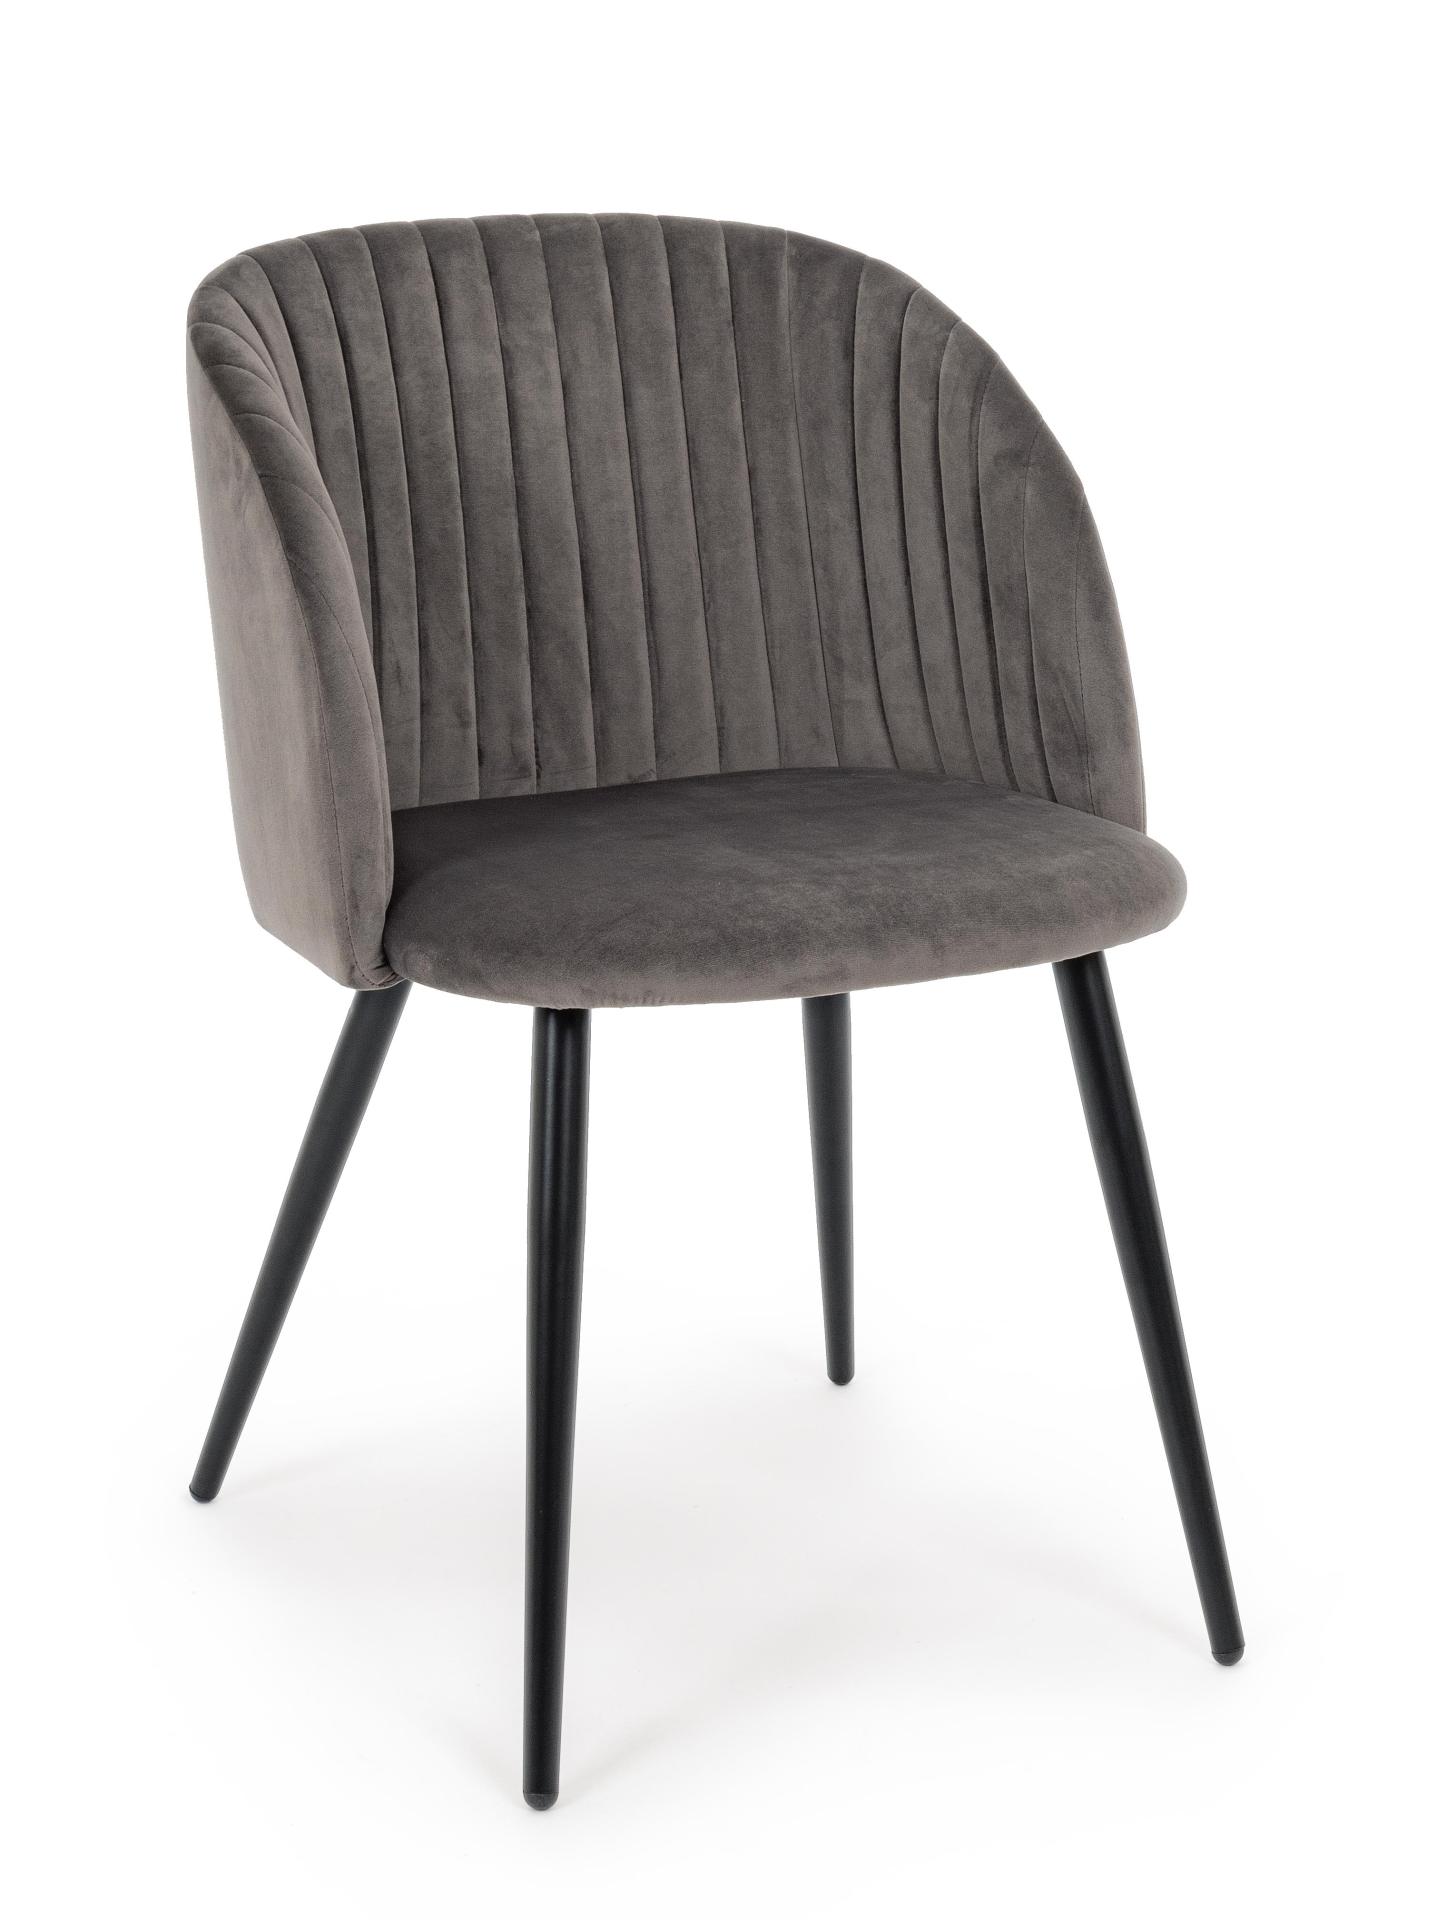 Der Esszimmerstuhl Queen überzeugt mit seinem modernem Design. Gefertigt wurde der Stuhl aus einem Samt-Bezug, welcher einen grauen Farbton besitzt. Das Gestell ist aus Metall und ist Schwarz. Die Sitzhöhe beträgt 49 cm.